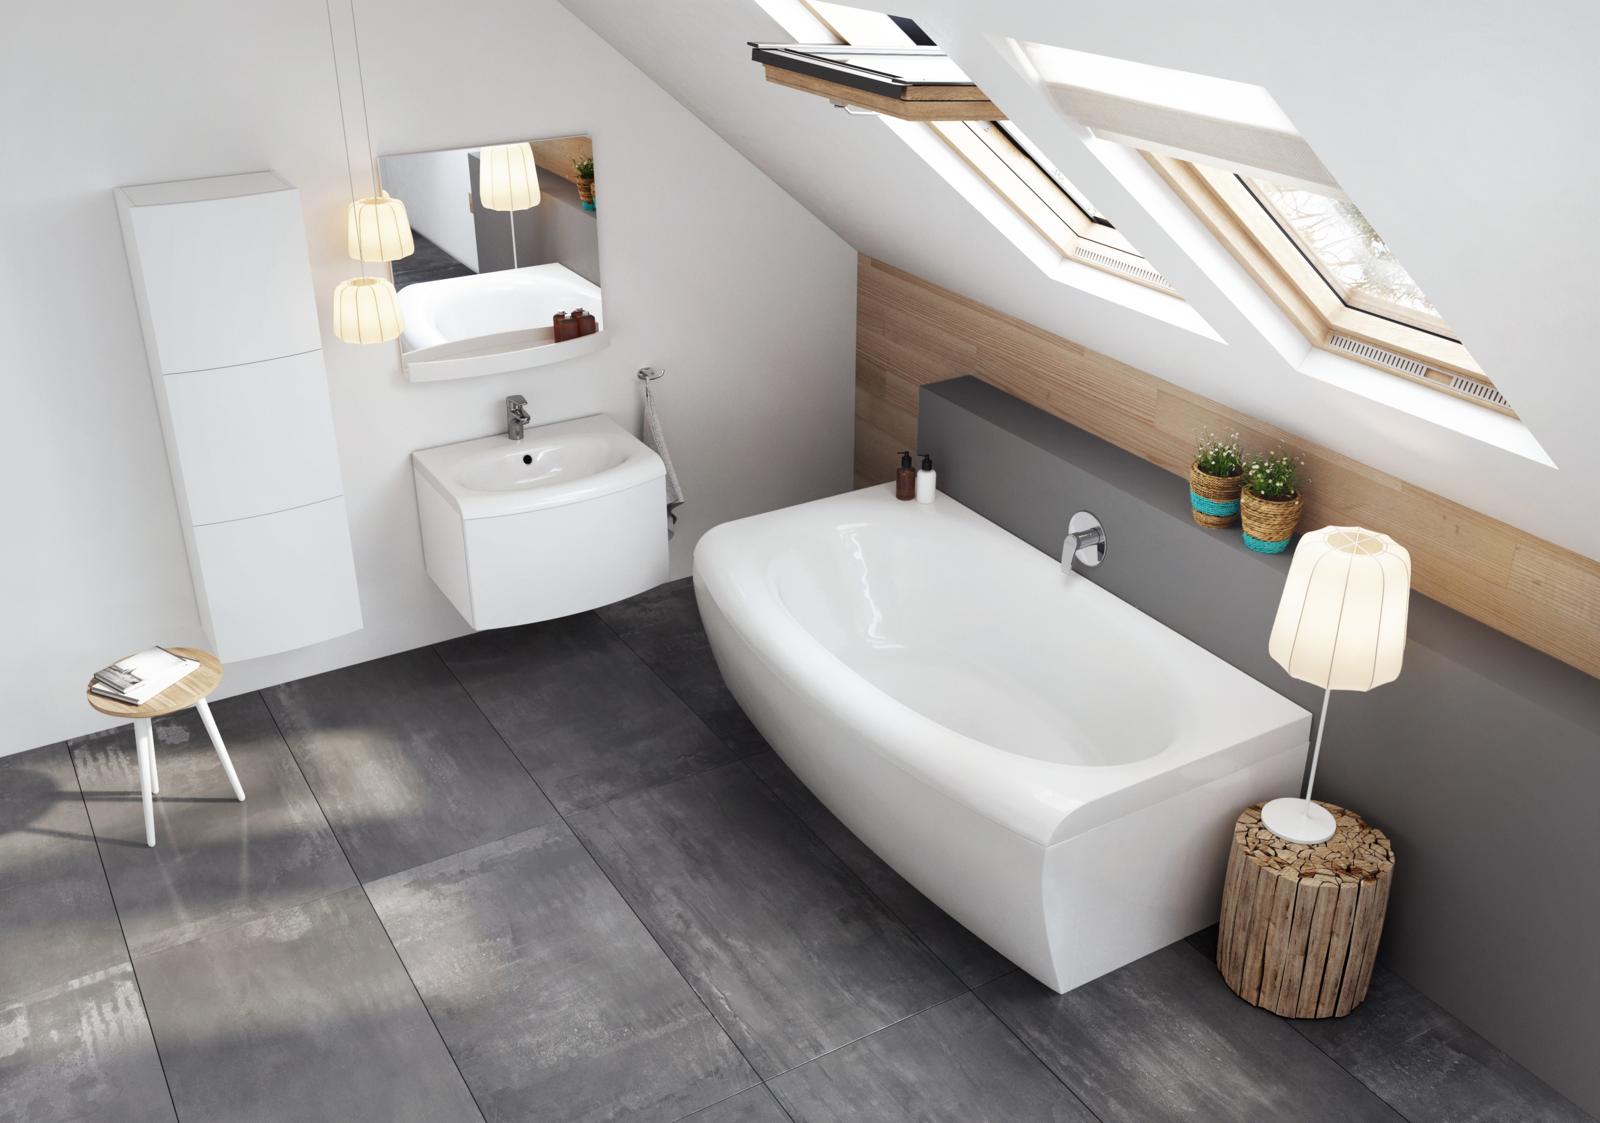 A kád a fürdőszoba egyik meghatározó eleme: fontos a formavilág, a praktikus kialakítás, az optimális helykihasználás és persze a kényelem.